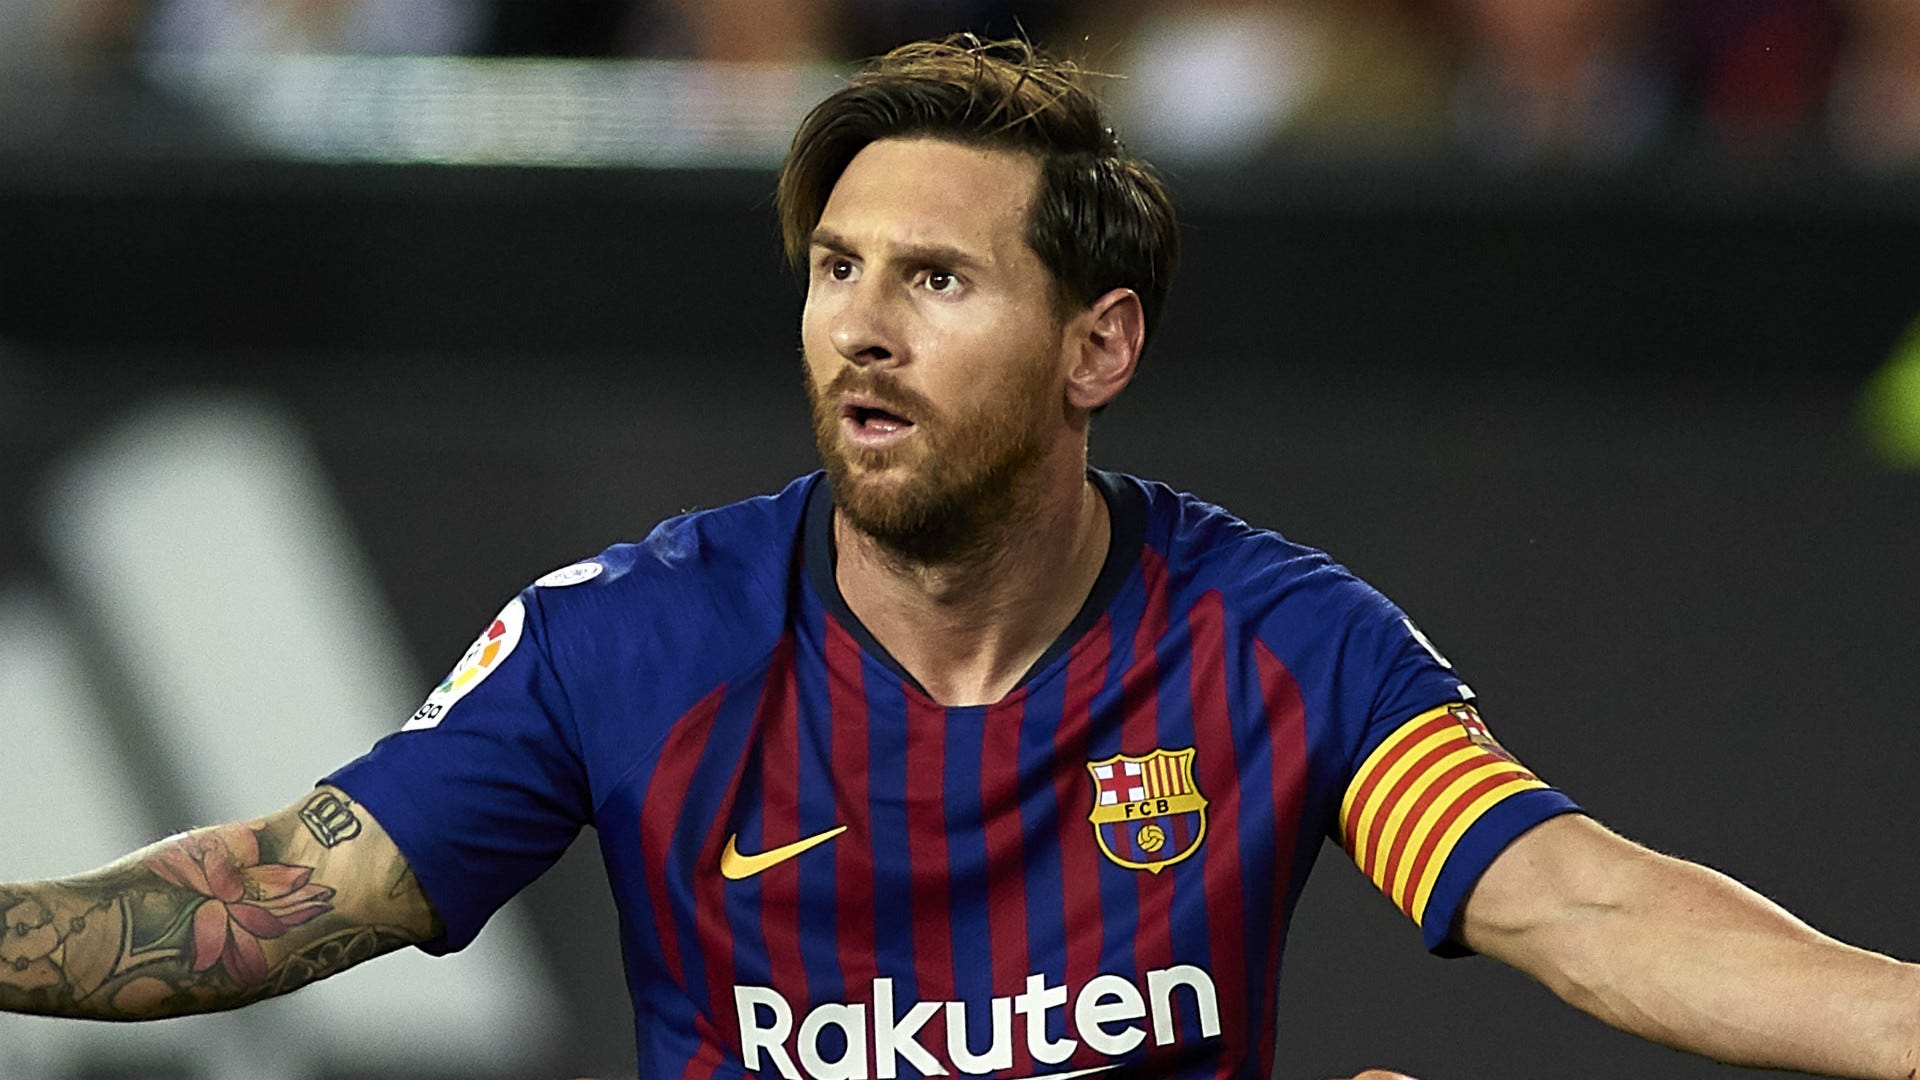 Hình nền Messi ultra HD sẽ khiến bạn phải mãn nhãn với chất lượng hình ảnh sống động vô cùng. Hãy cùng chiêm ngưỡng những khoảnh khắc ấn tượng của siêu sao bóng đá này và cảm nhận sự khác biệt với những hình nền thông thường. Chắc chắn bạn sẽ không thể rời mắt khỏi bức tranh nền này được đâu.